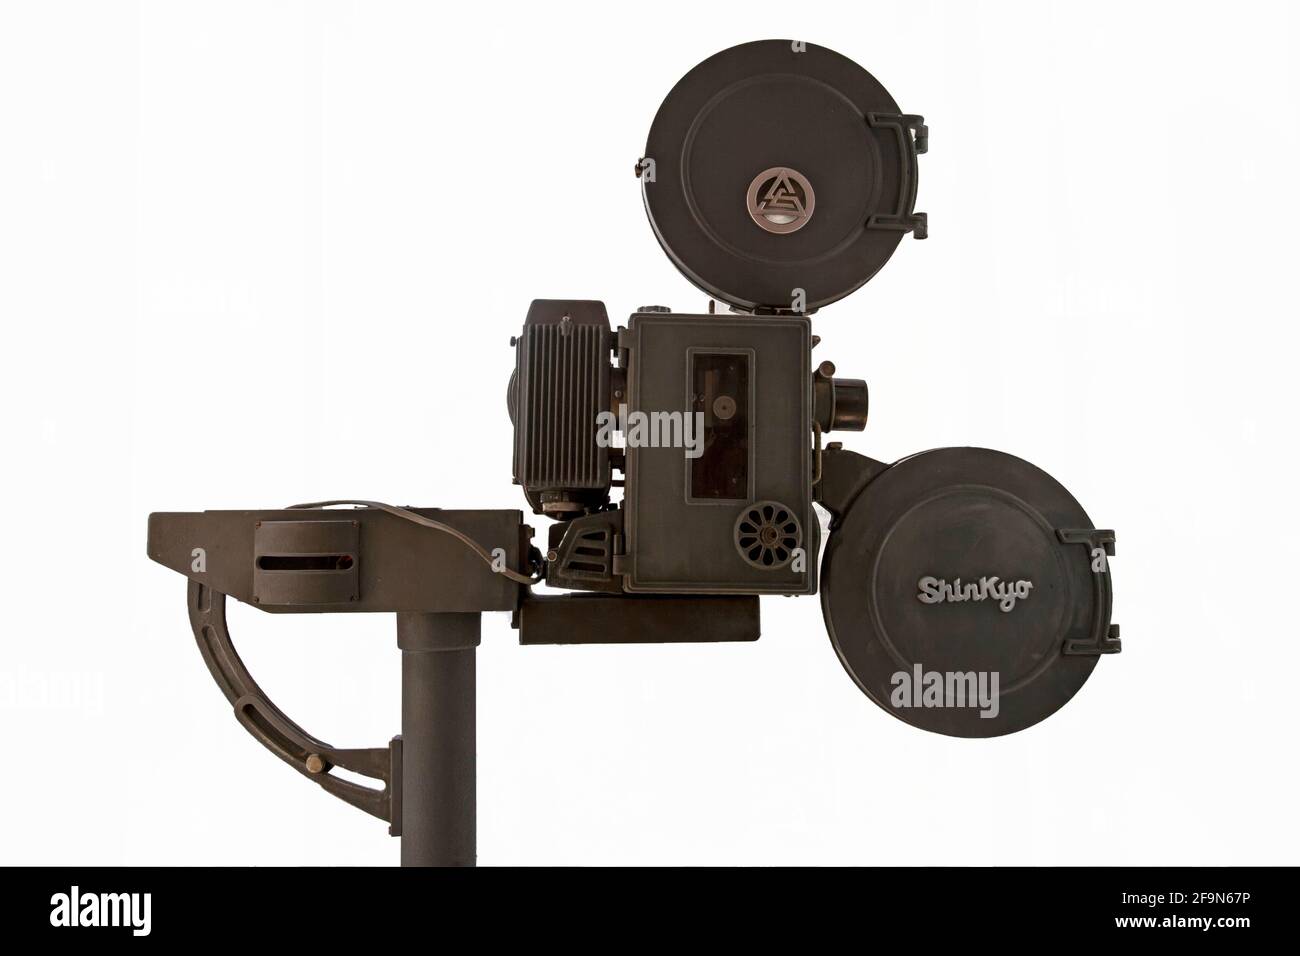 Un ancien projecteur de mouvement 35 mm portable Shingkyo fabriqué en Japon Banque D'Images